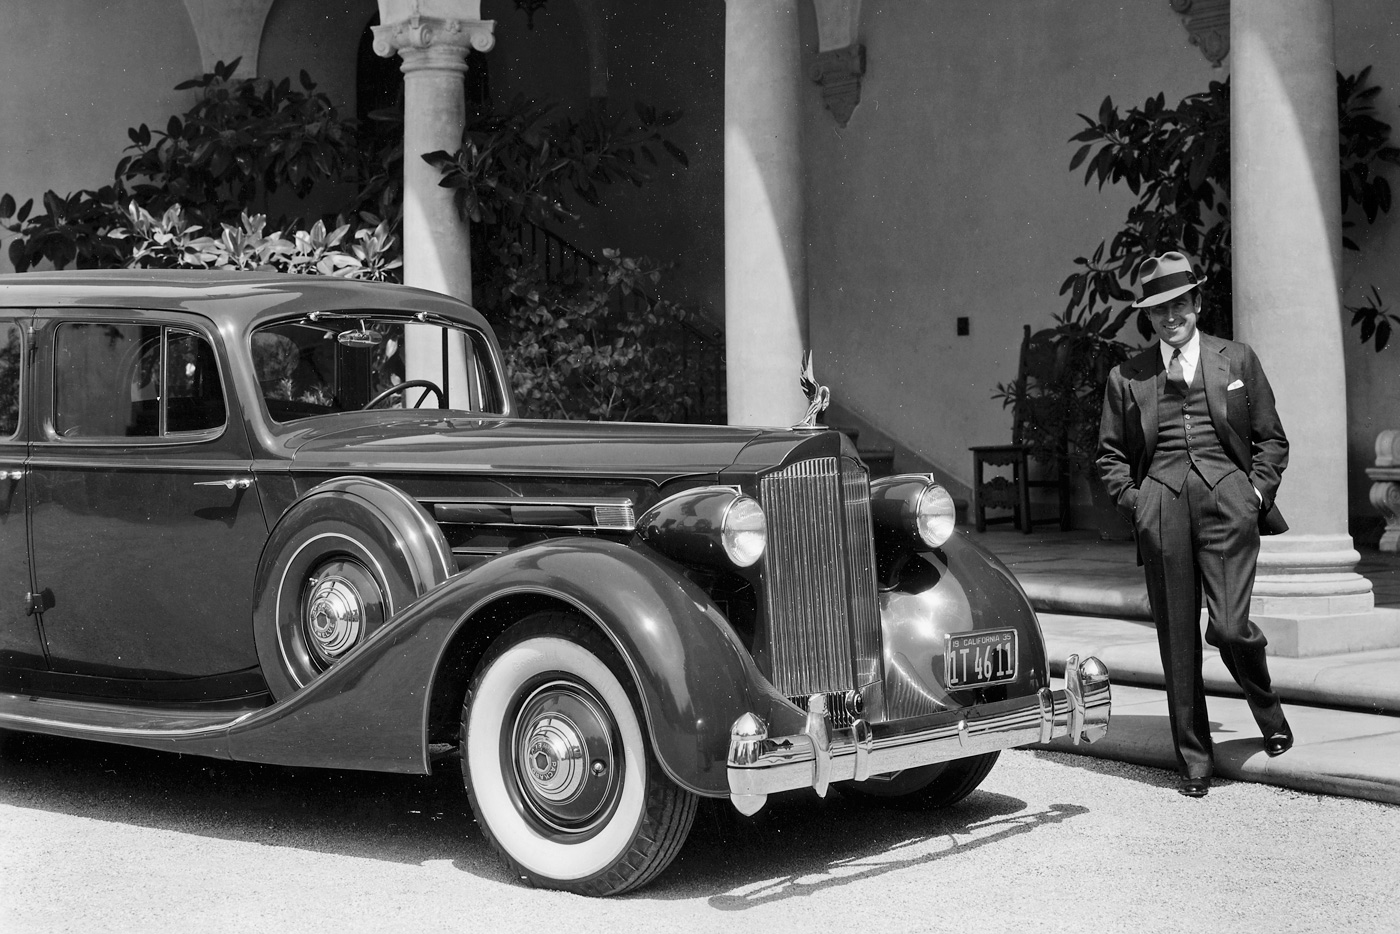 Классическое решение 1930-х — запаски в передних крыльях. У классных авто, таких как 12-цилиндровый Packard model 1207 выпуска 1935 года, запаски убирались в стальные кожухи. В СССР их прозвали «сковородами». Такой автомобиль, только бронированный, был у Сталина. А этот купил комик Гарольд Ллойд